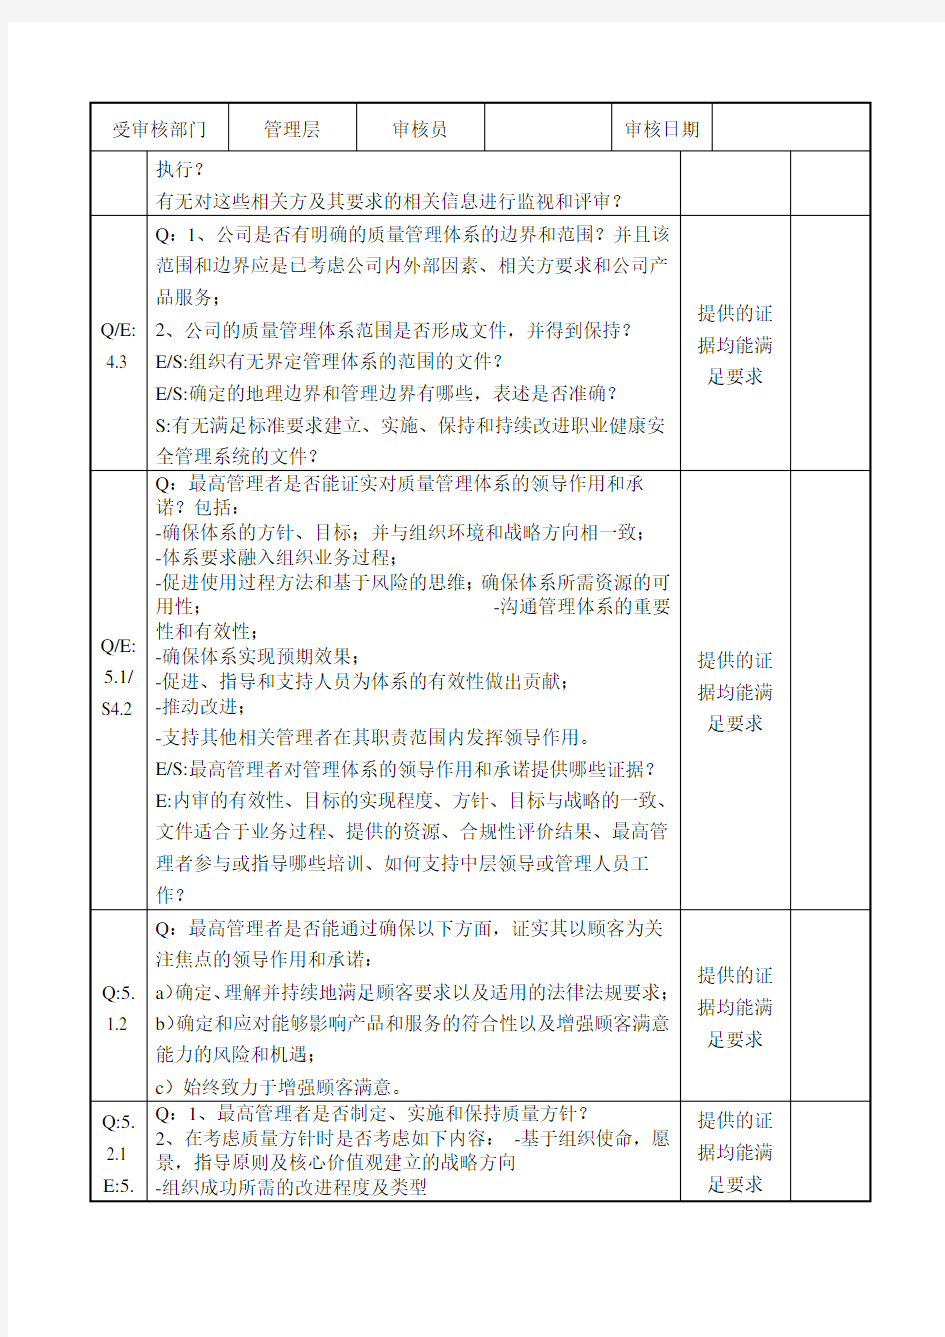 2015版建筑三体系(含50430)内部审核检查记录表(完整版)